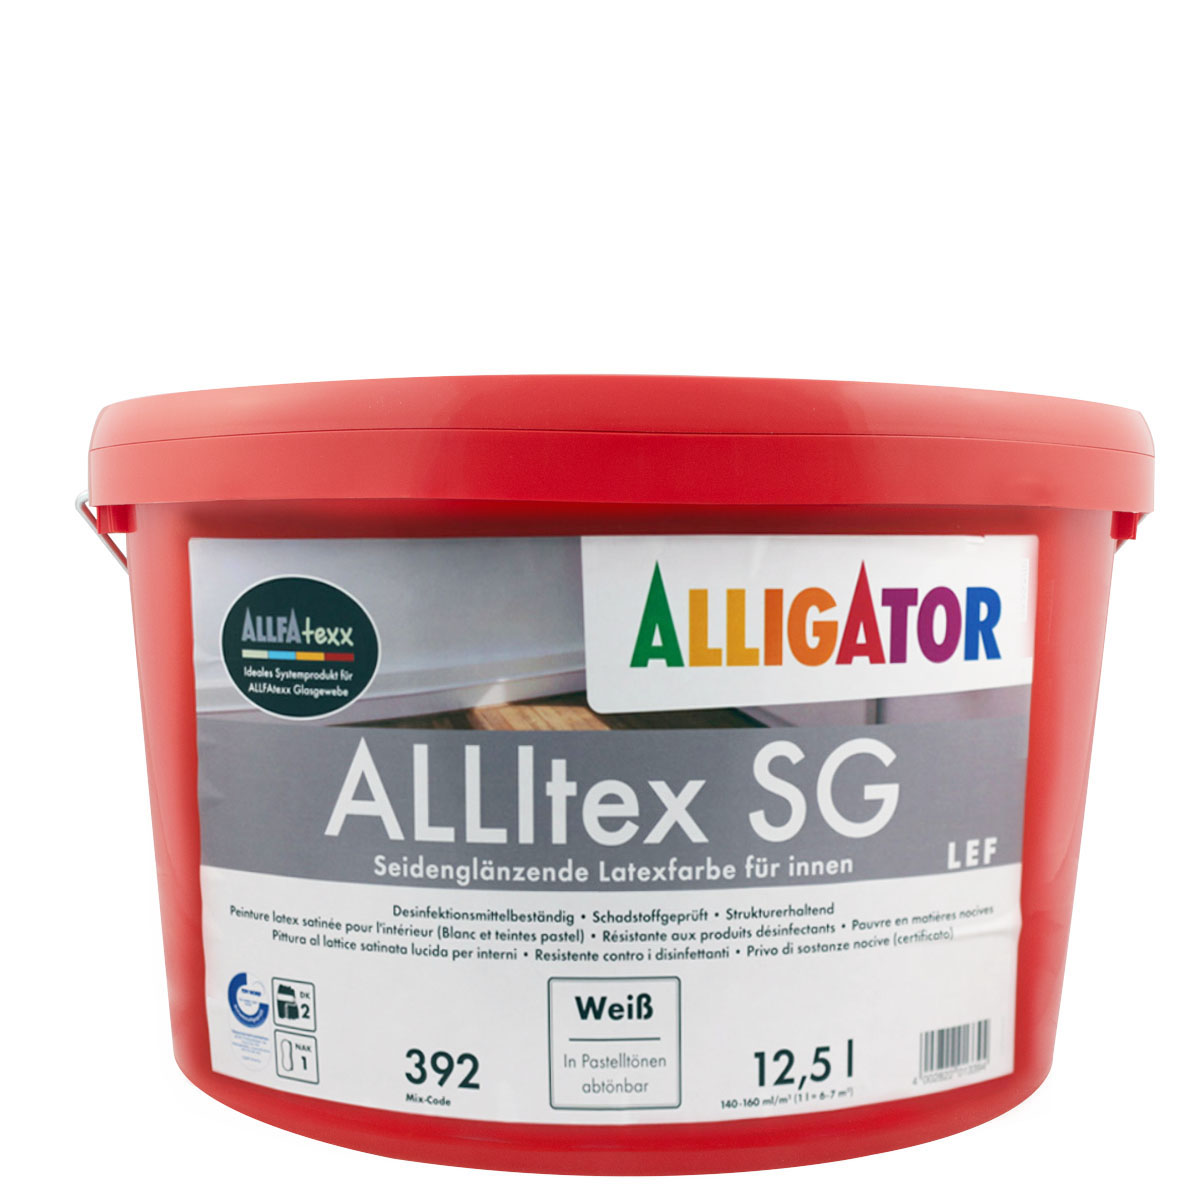 Alligator Allitex SG 12,5L weiss ,Latexfarbe, Seidenglänzend